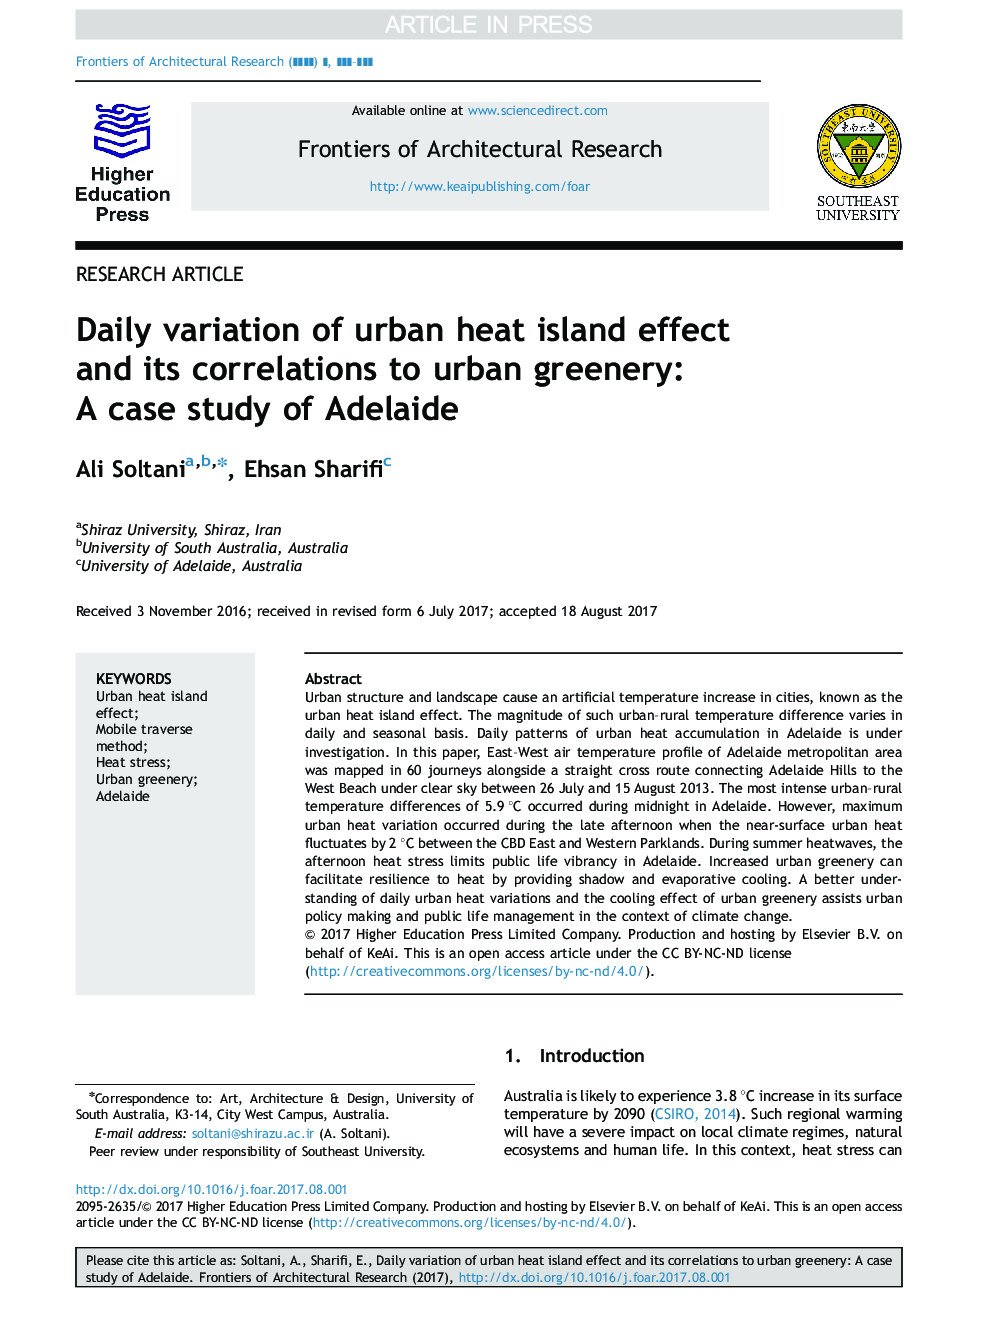 تغییرات روزانه اثر جزیره گرمایی شهری و ارتباط آن با سبزۀ شهری: مطالعه موردی آدلاید 